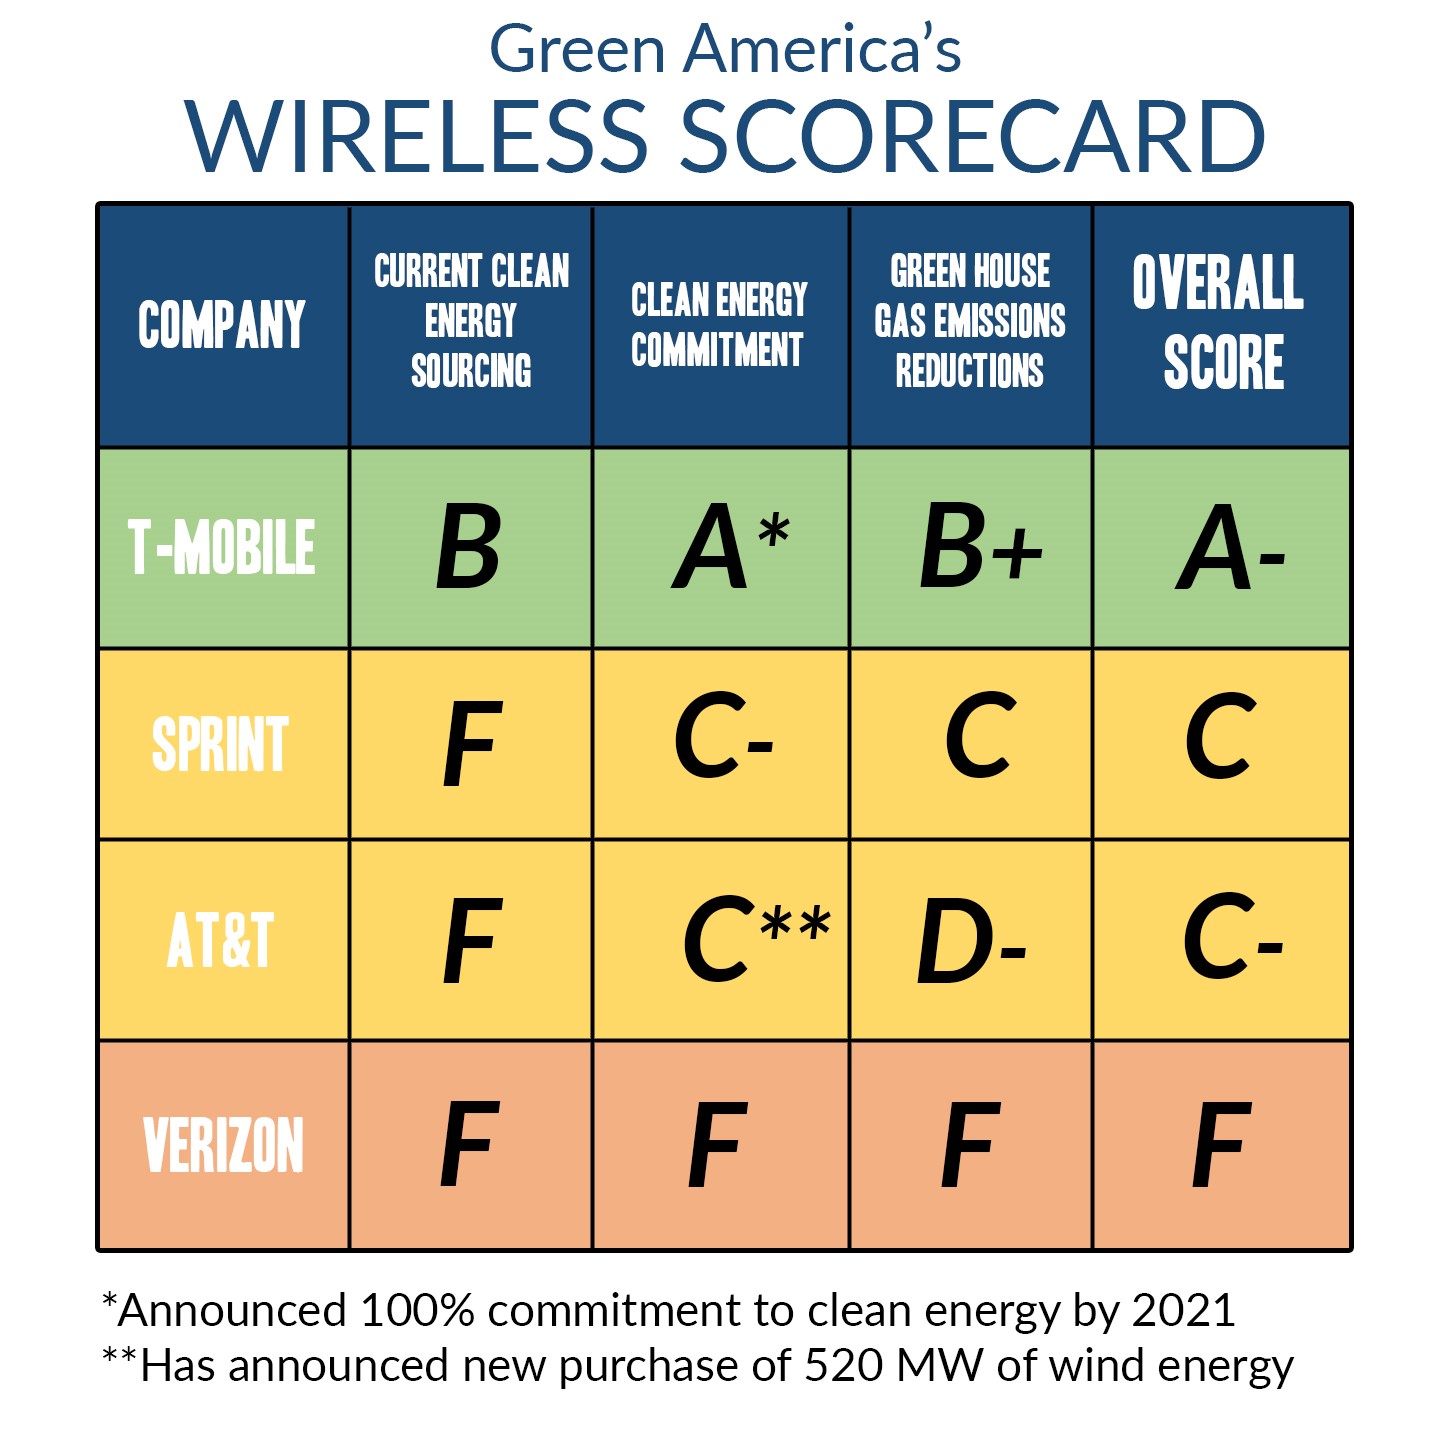 Scorecard of telecom companies